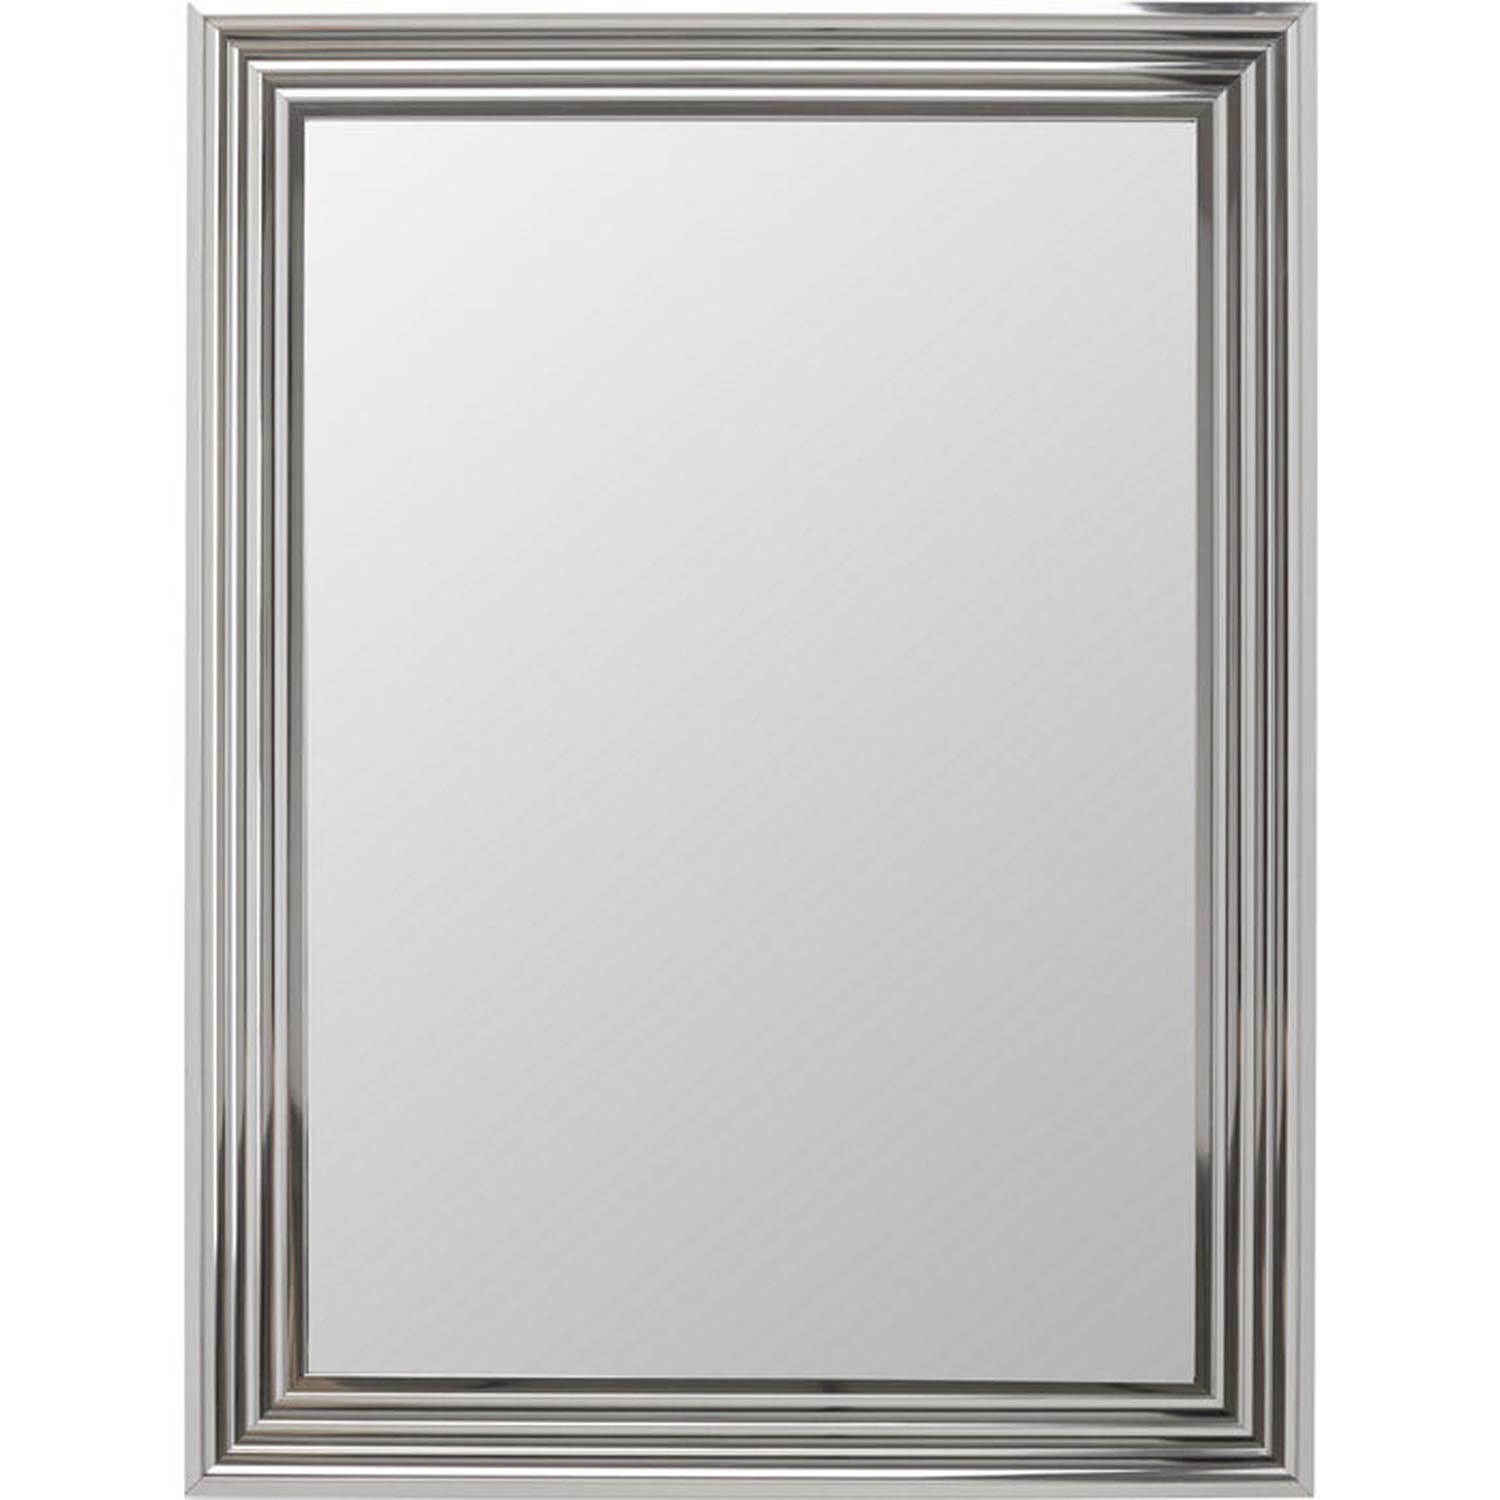 KARE DESIGN Frame Eve Silver vægspejl - spejlglas og sølv polystyren (74x99)